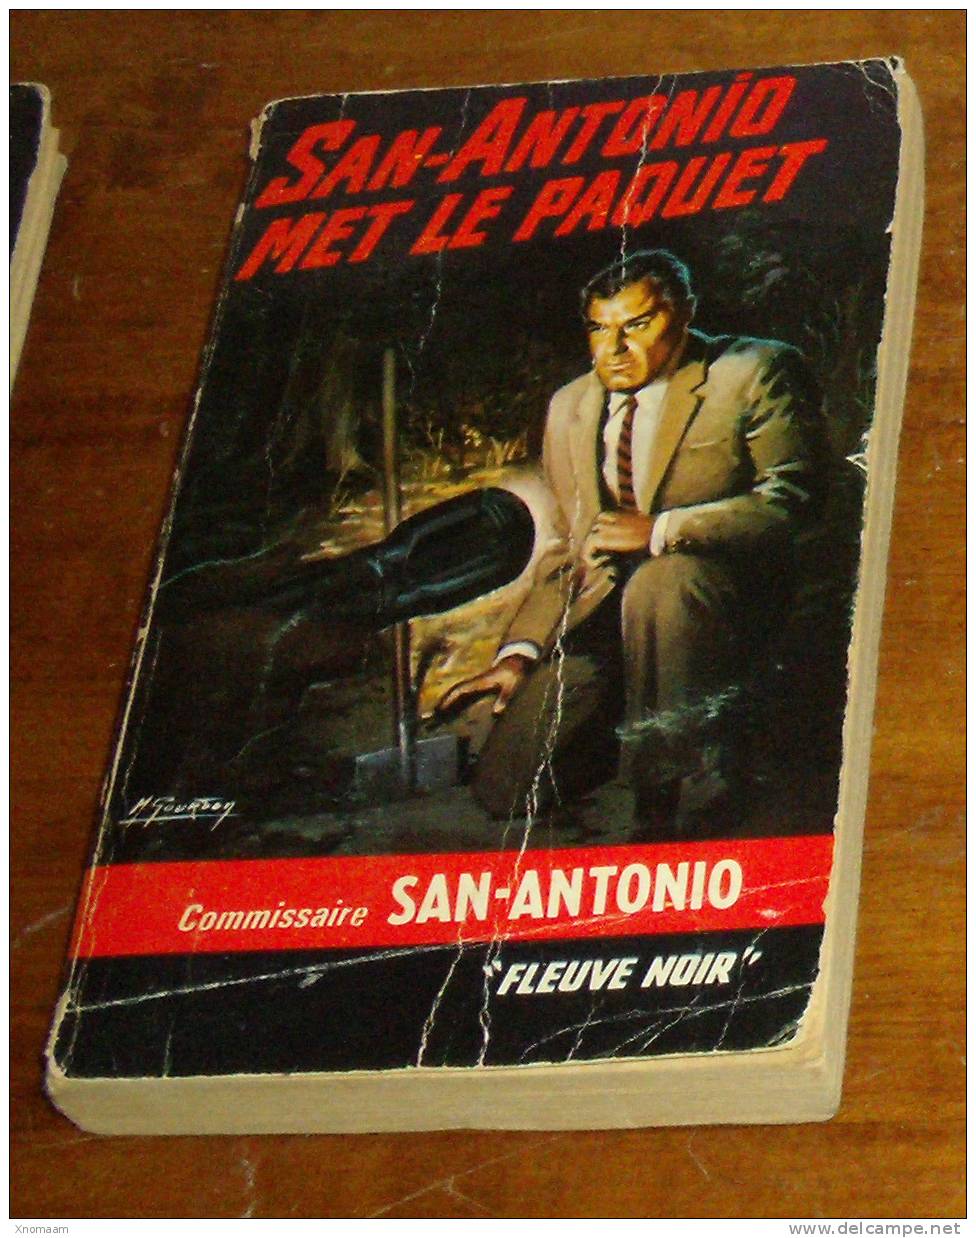 San Antonio - San-antonio Met Le Paquet - San Antonio